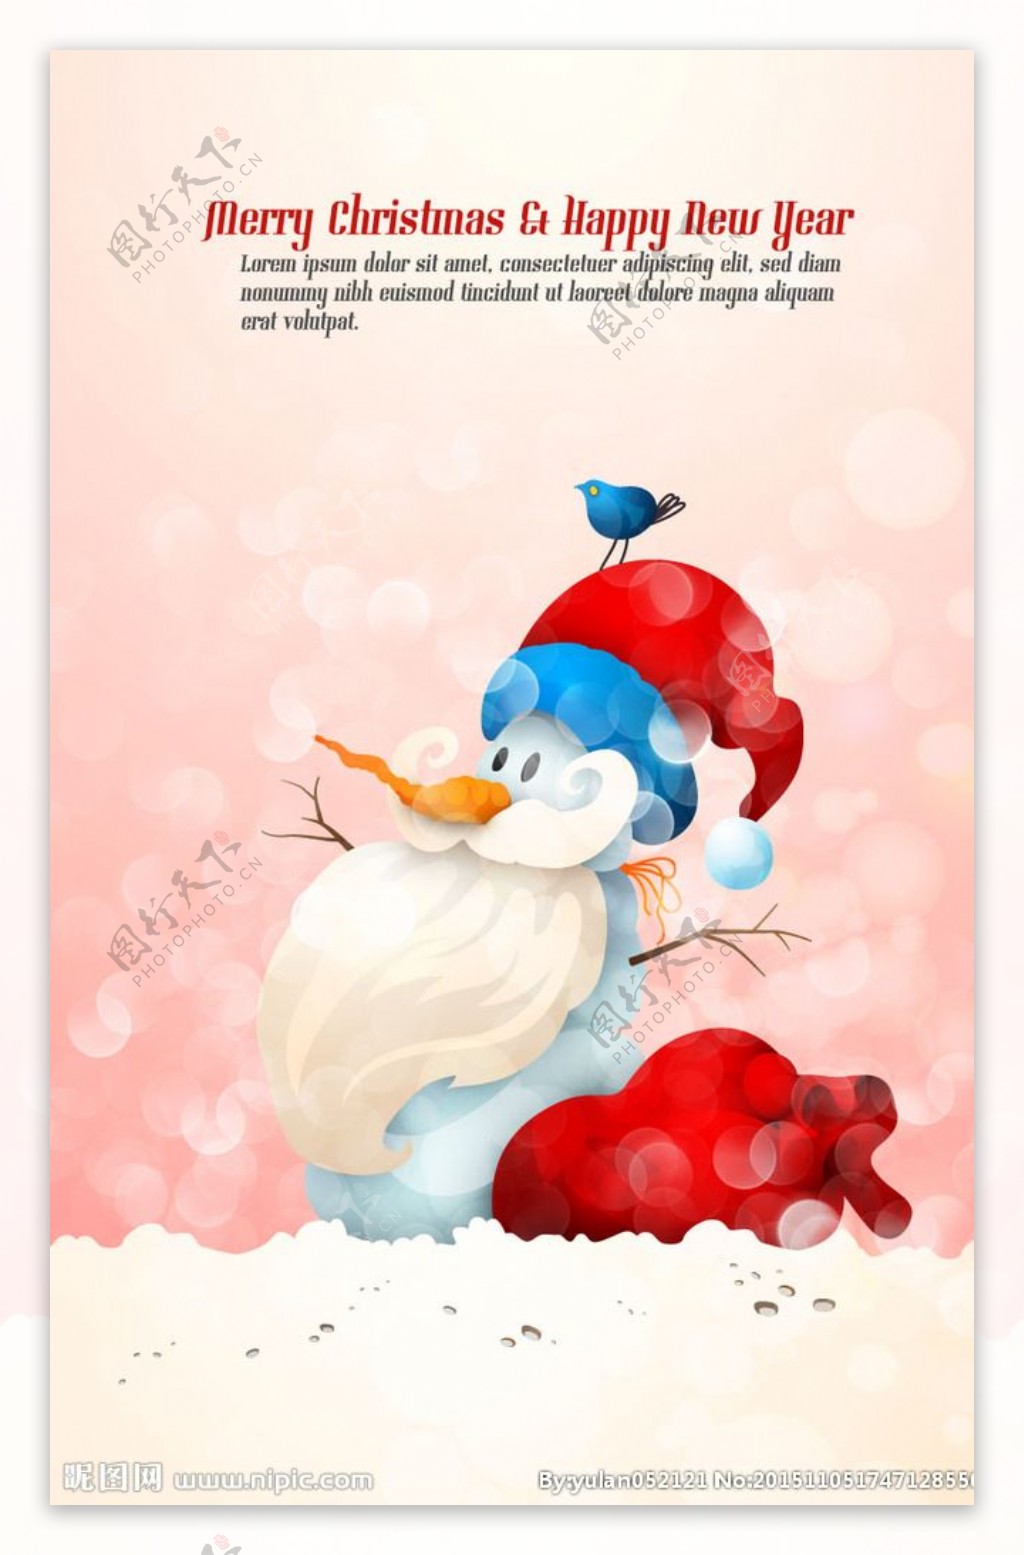 可爱雪人圣诞老人插画矢量素材